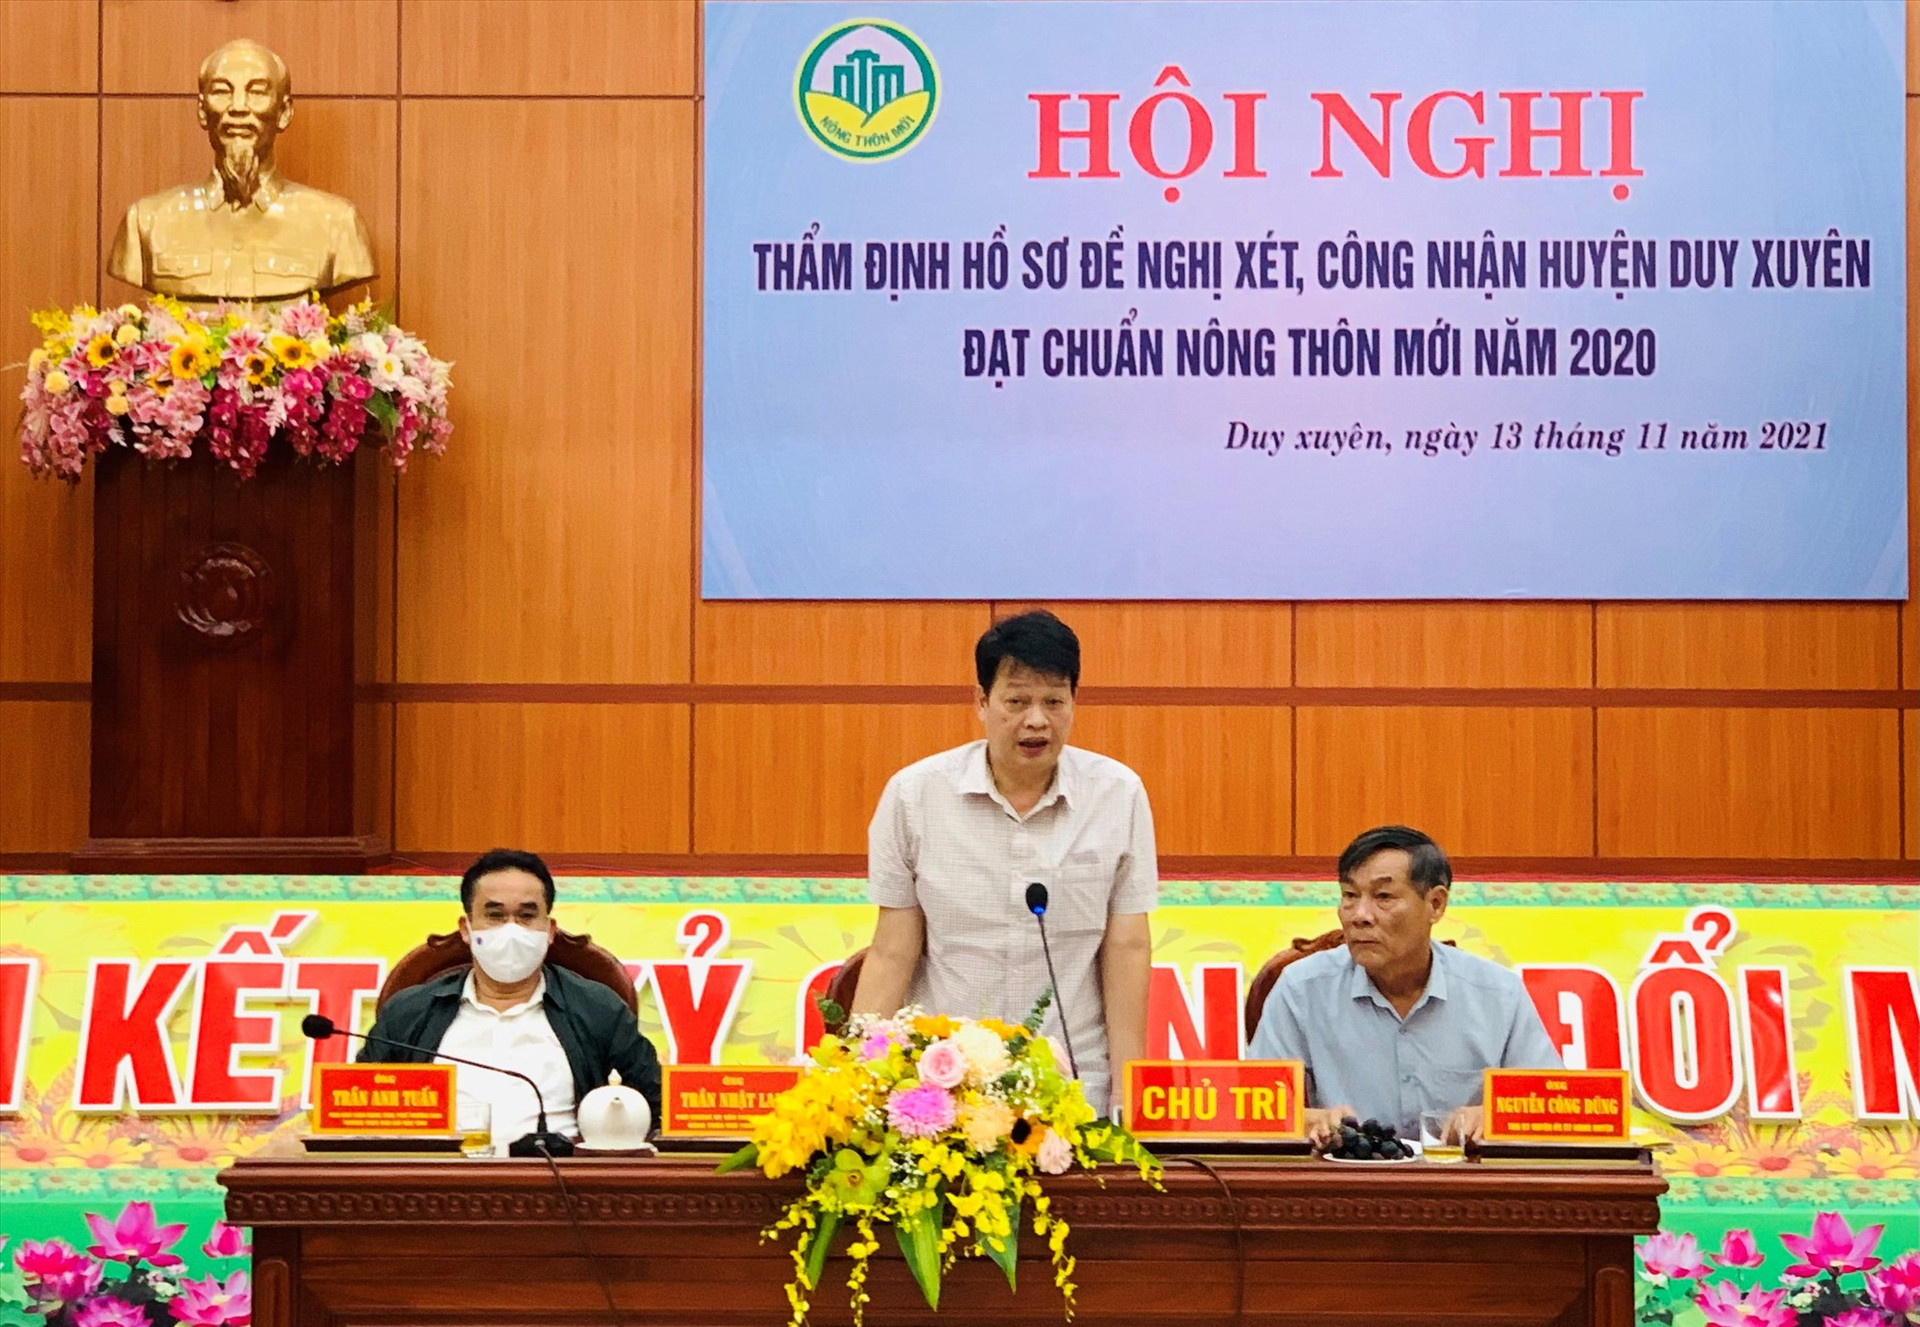 Ông Trần Nhật Lam - Phó Chánh Văn phòng Điều phối NTM Trung ương phát biểu tại buổi làm việc. Ảnh: T.S